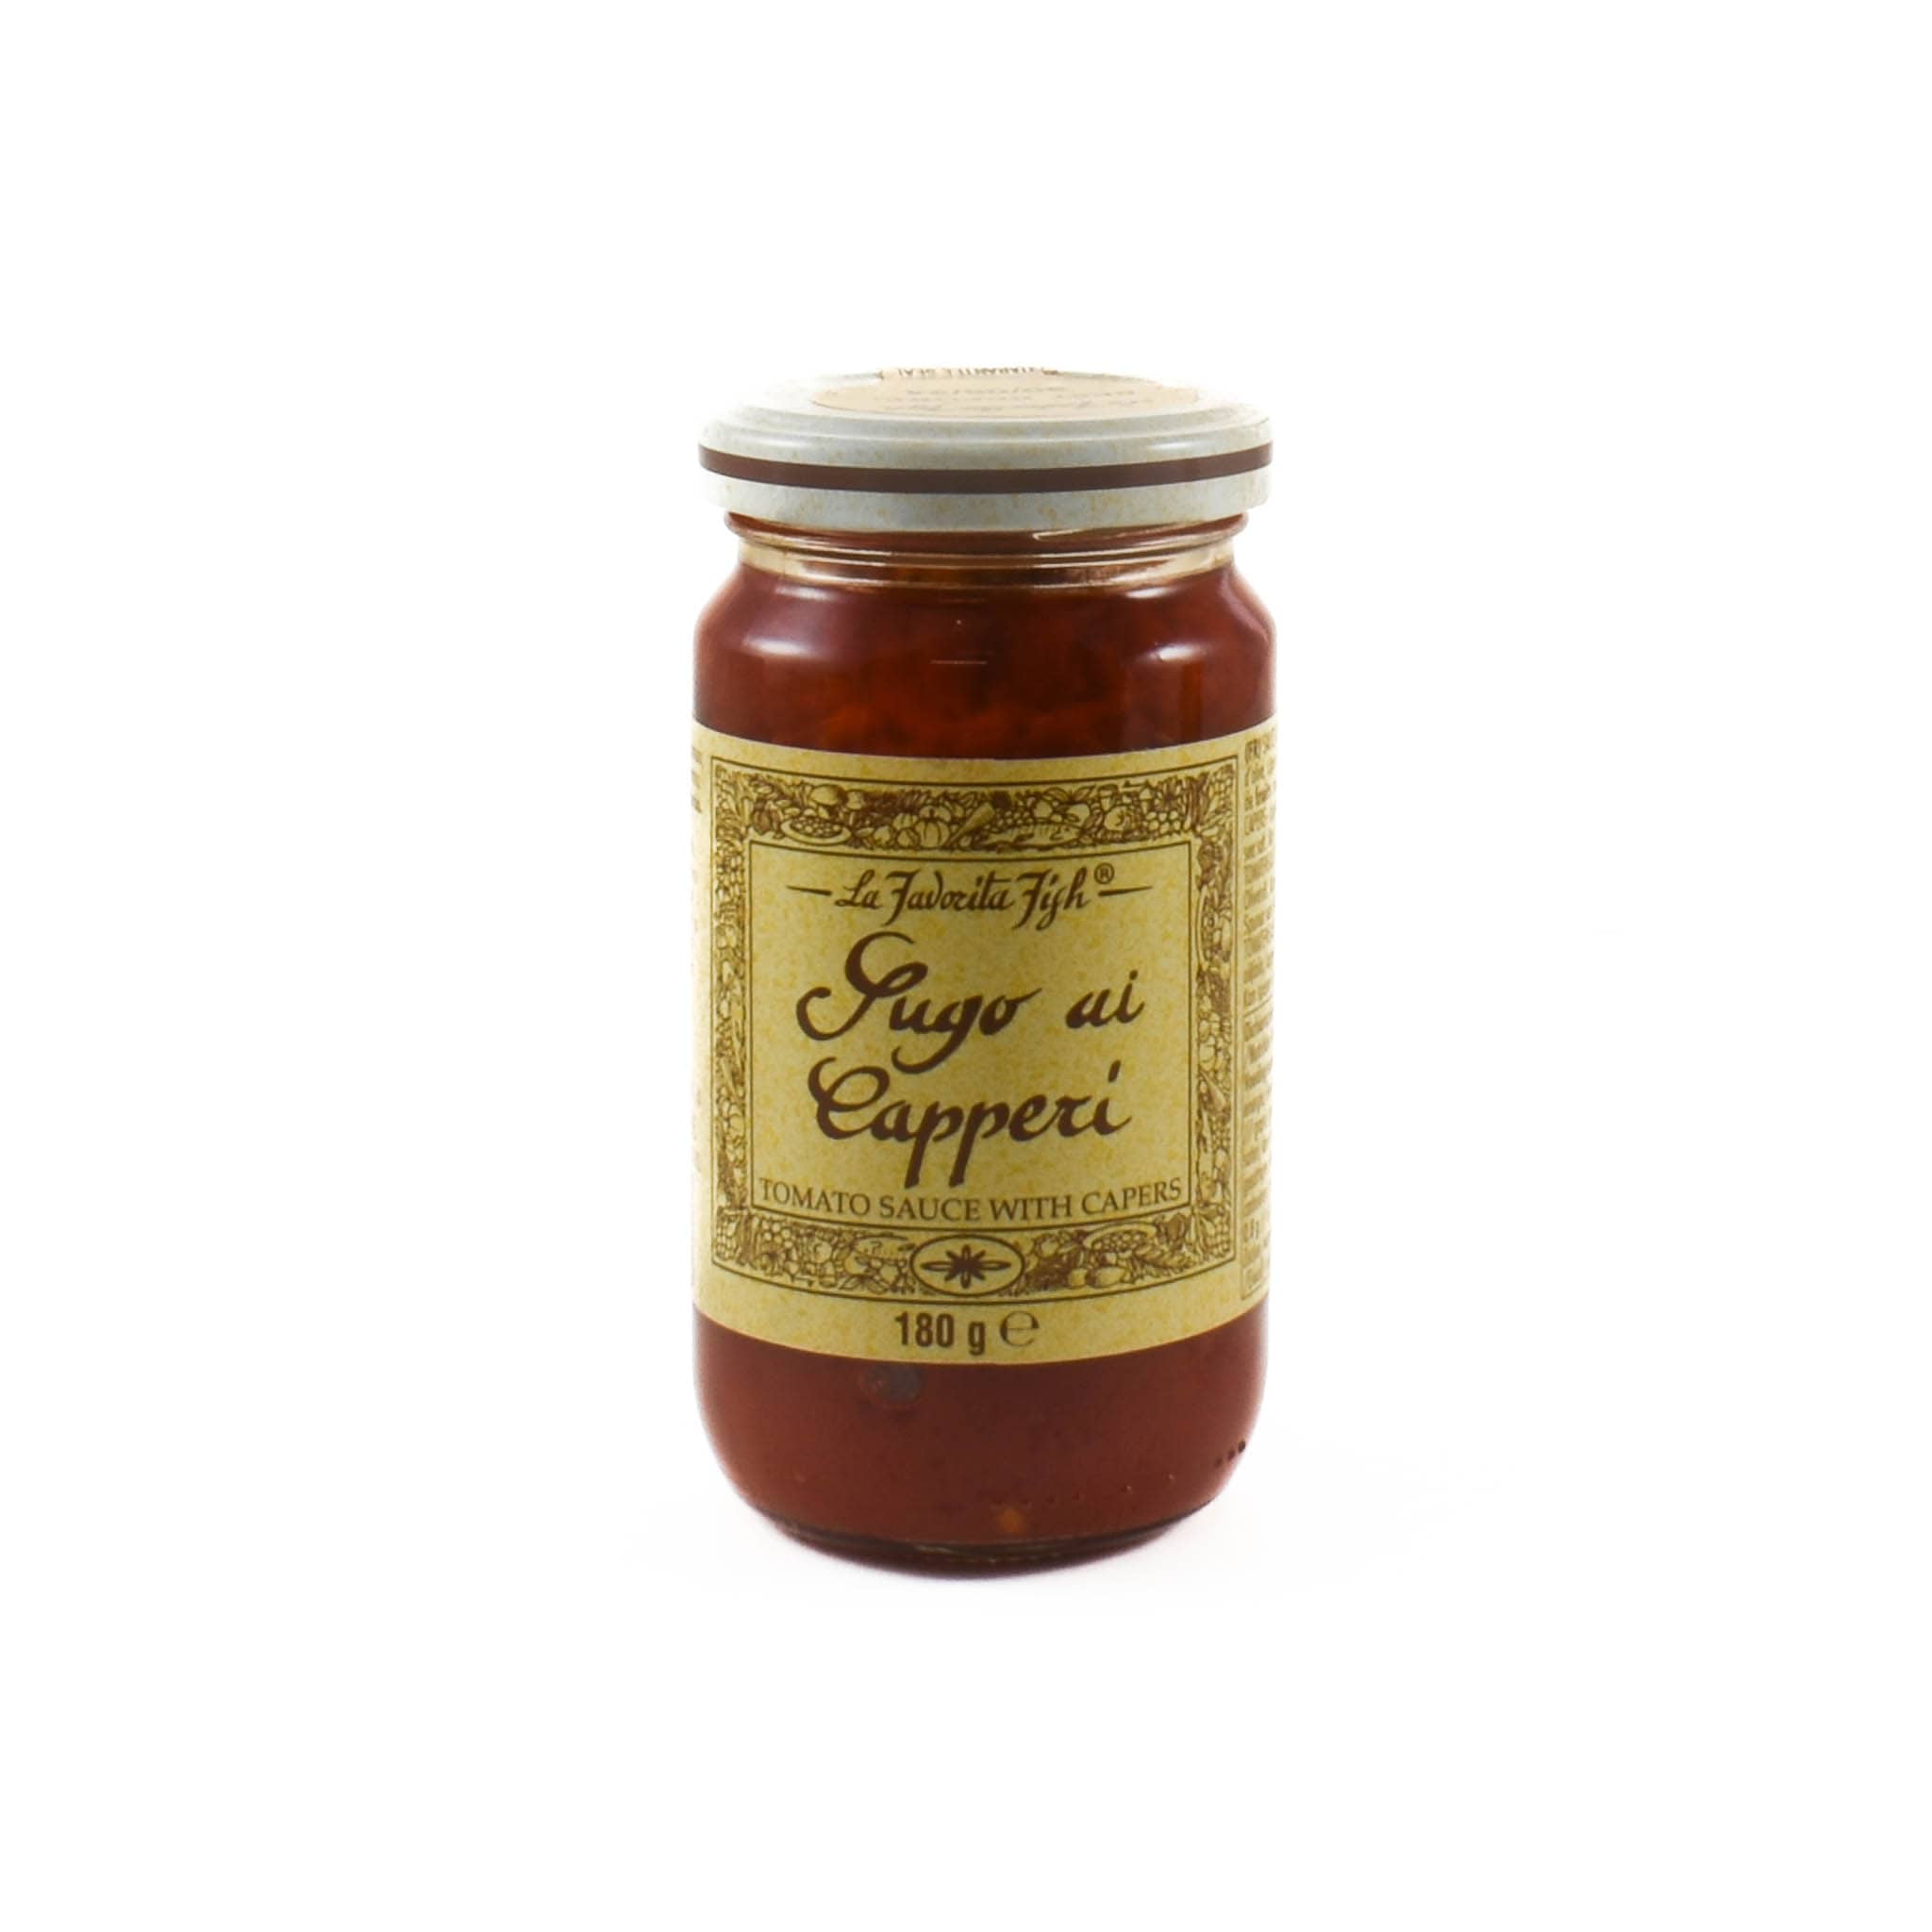 La Favorita Tomato Sauce With Capers, 180g